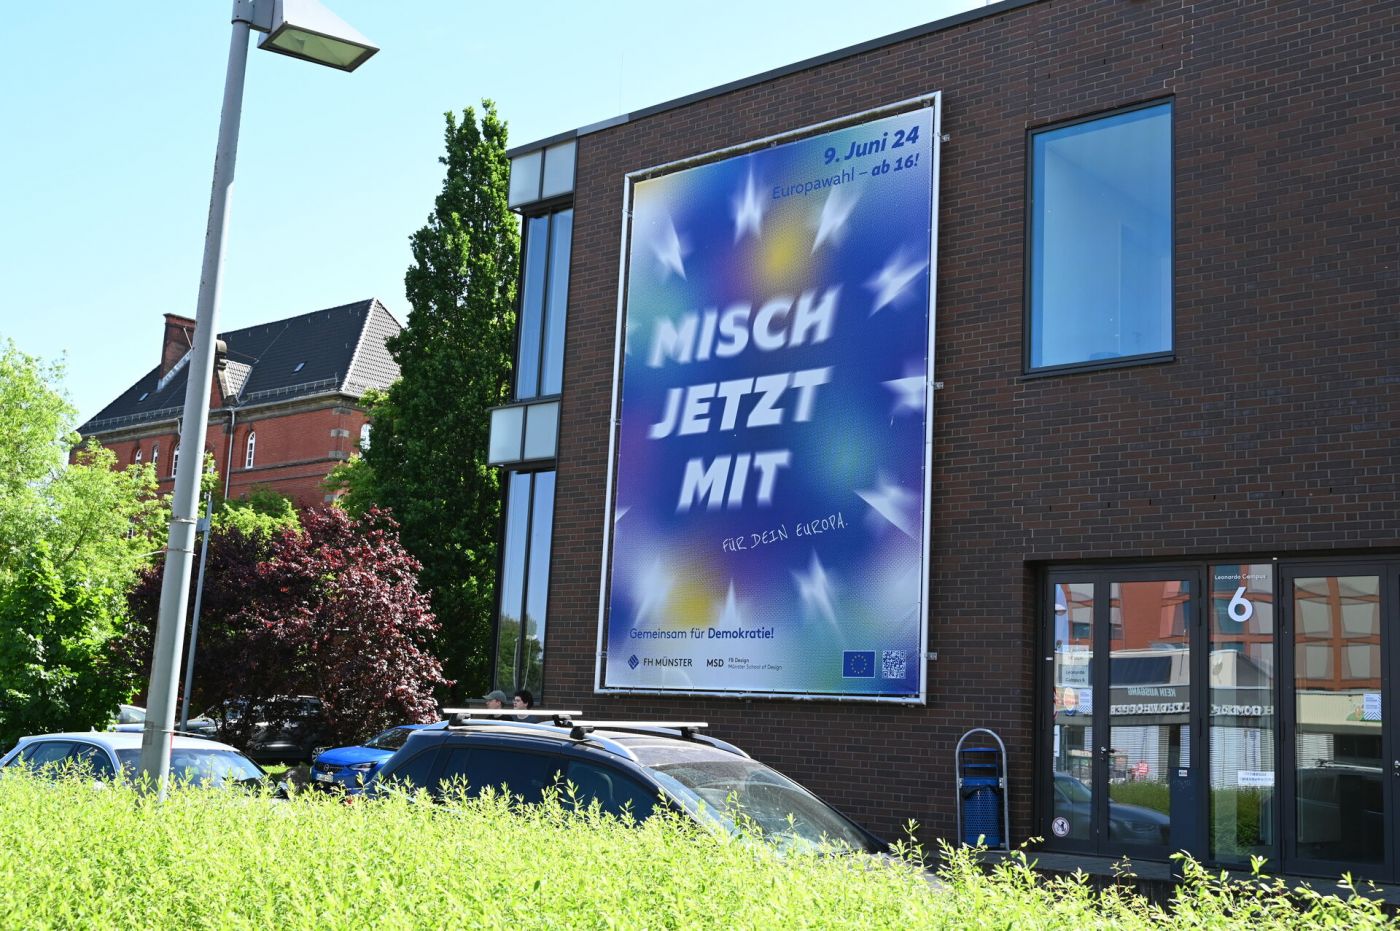 Blaues Banner mit dem Slogan "Misch jetzt mit" an der Fassade eines großen Gebäudes mit Backstein-Glas-Fassade (Foto: Stefanie Gosejohann)